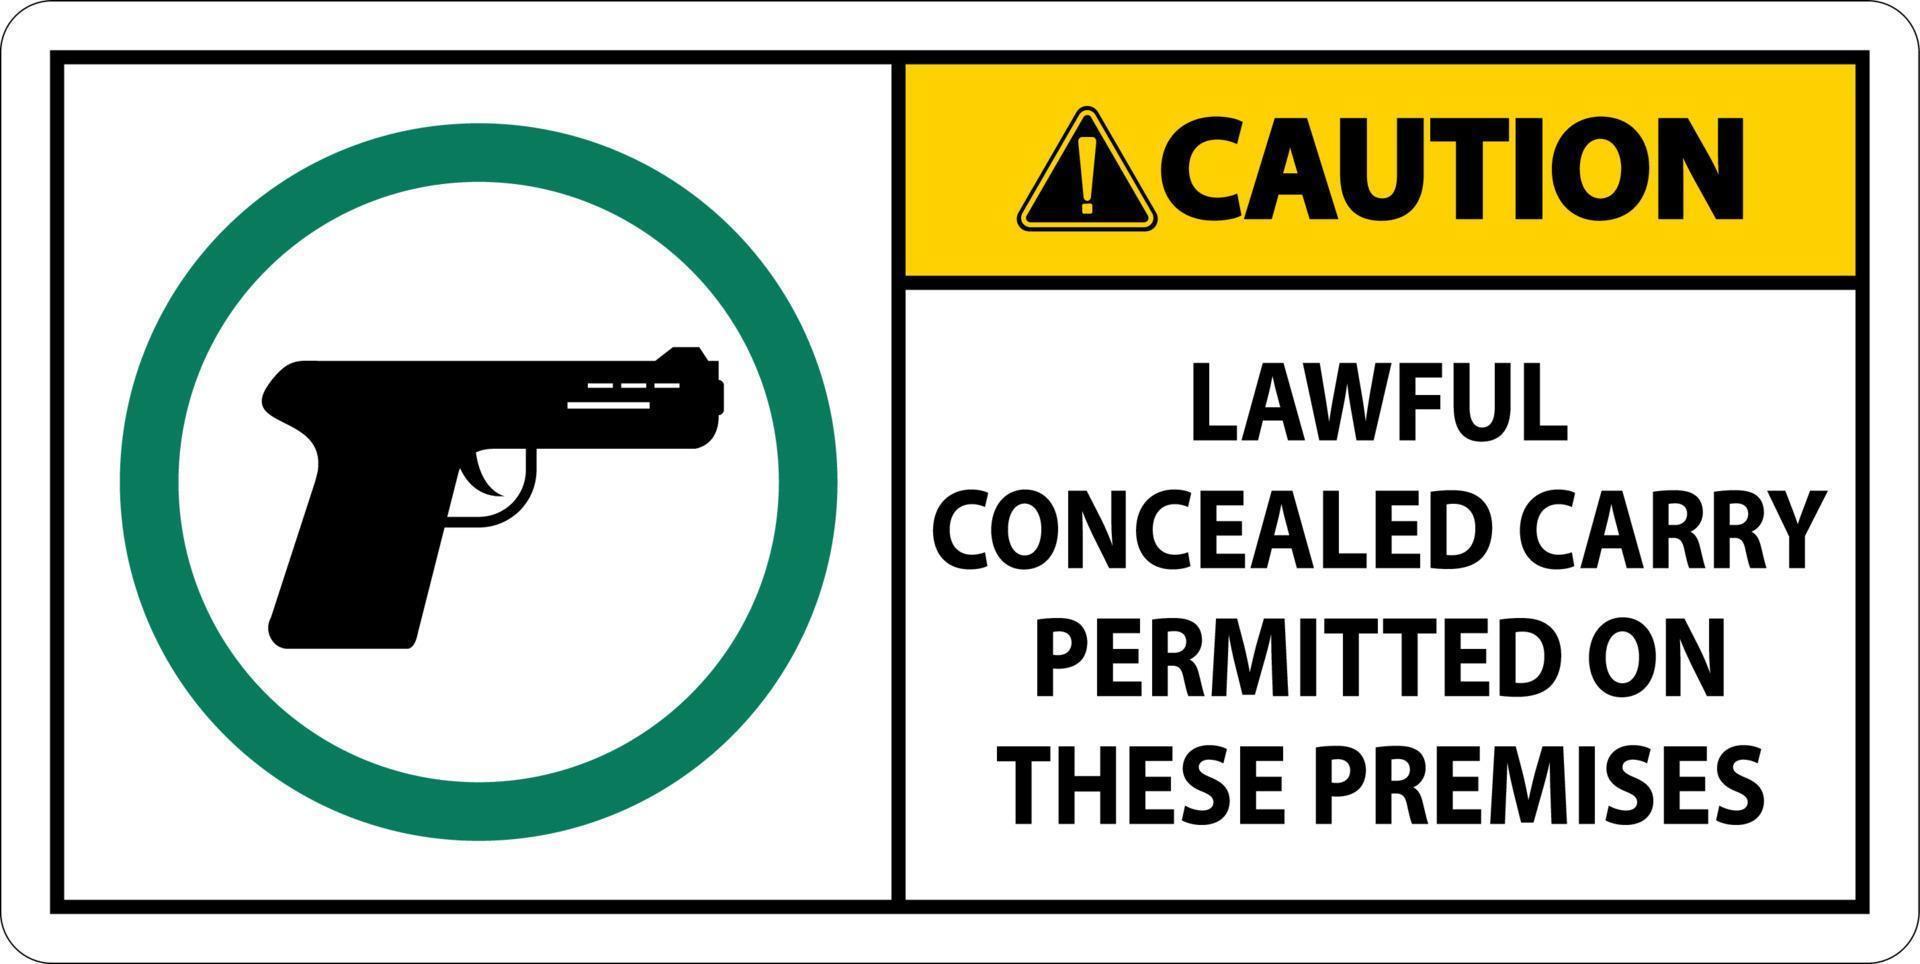 cuidado armas de fogo permitidas sinal legal transporte oculto permitido nestas instalações vetor